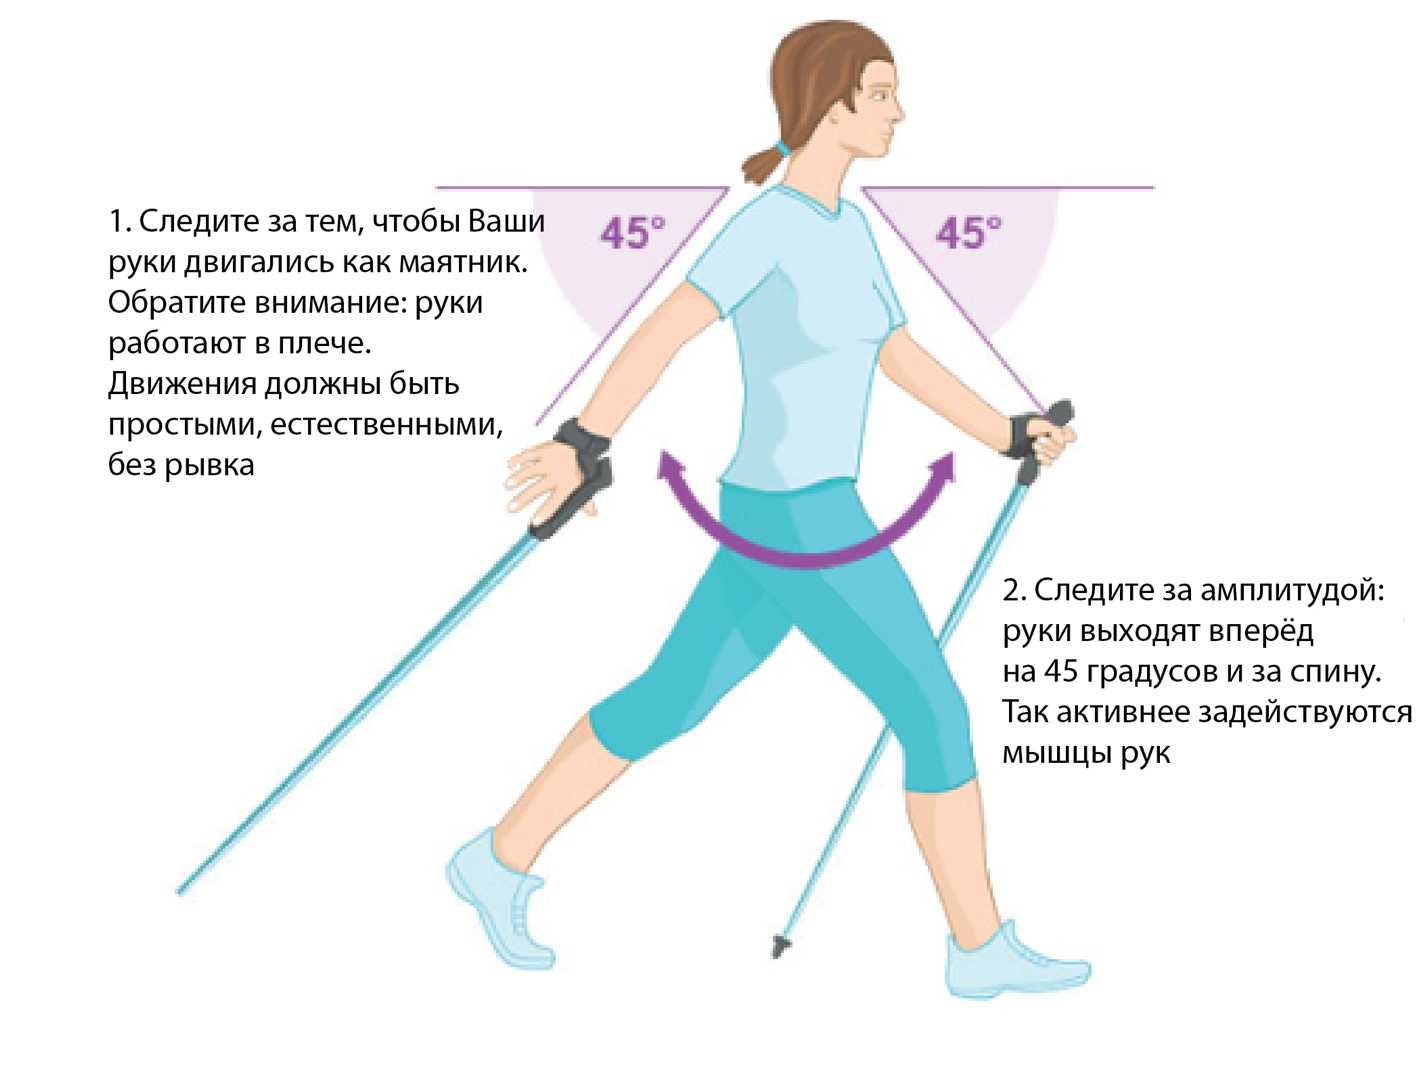 Полезные советы тем, кто хочет заняться скандинавской ходьбой Выбор палок, техника ходьбы, польза и противопоказания